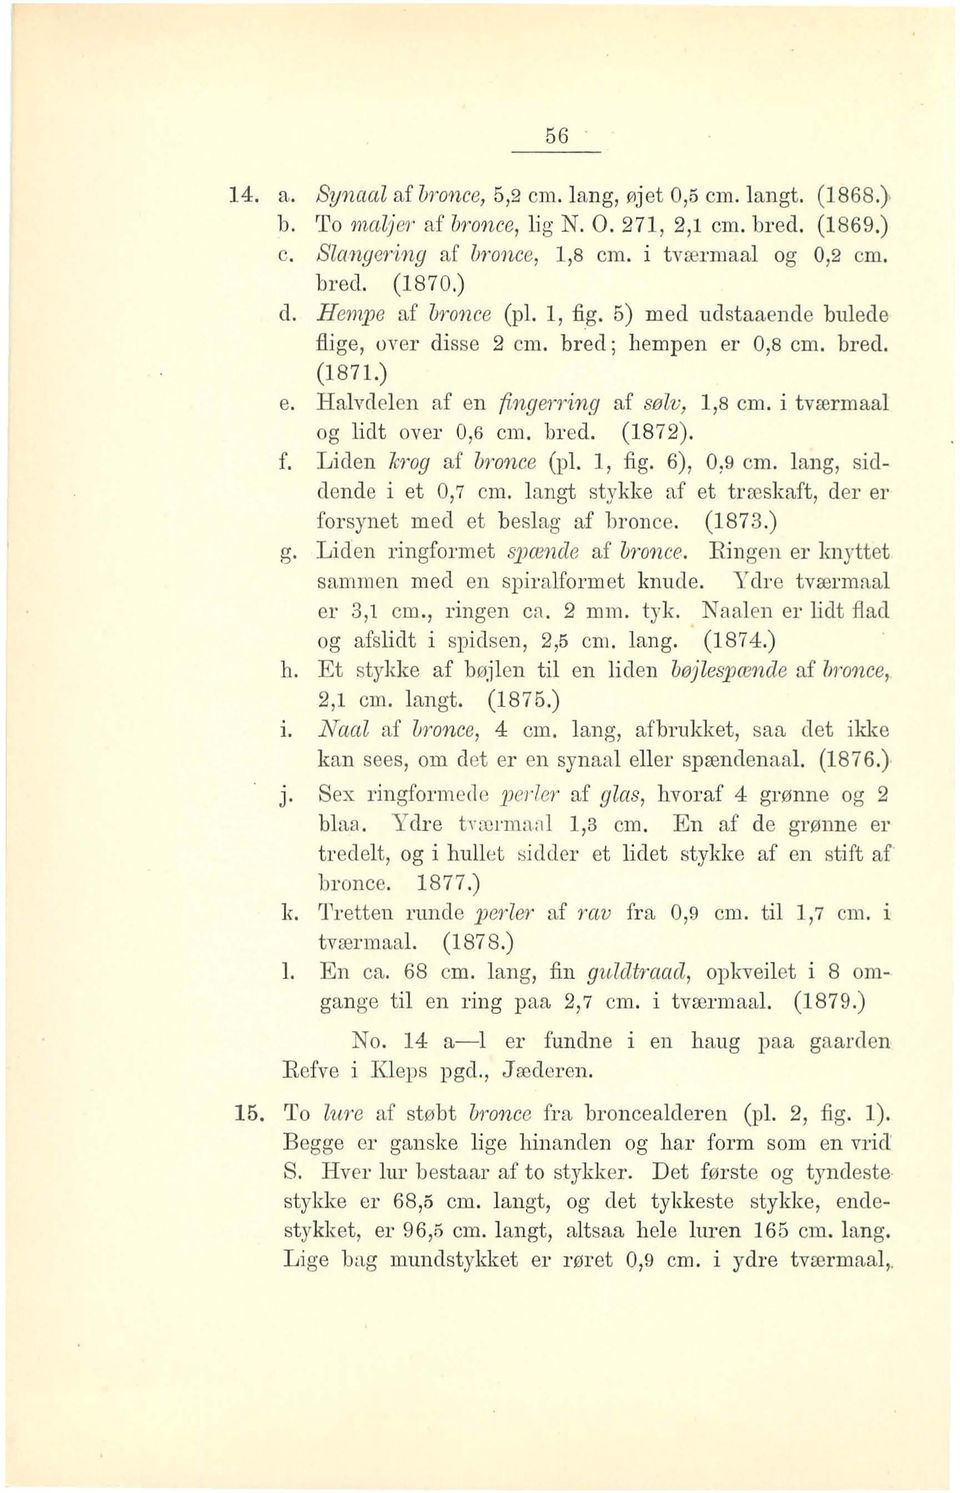 bred. (1872). f. Liden lcrog af b,'once (pl. l, fig. 6), 0,9 cm. lang, siddende i et 0,7 cm. langt stykke af et træskaft, eler er forsynet med et beslag af bronce. (1873.) g.